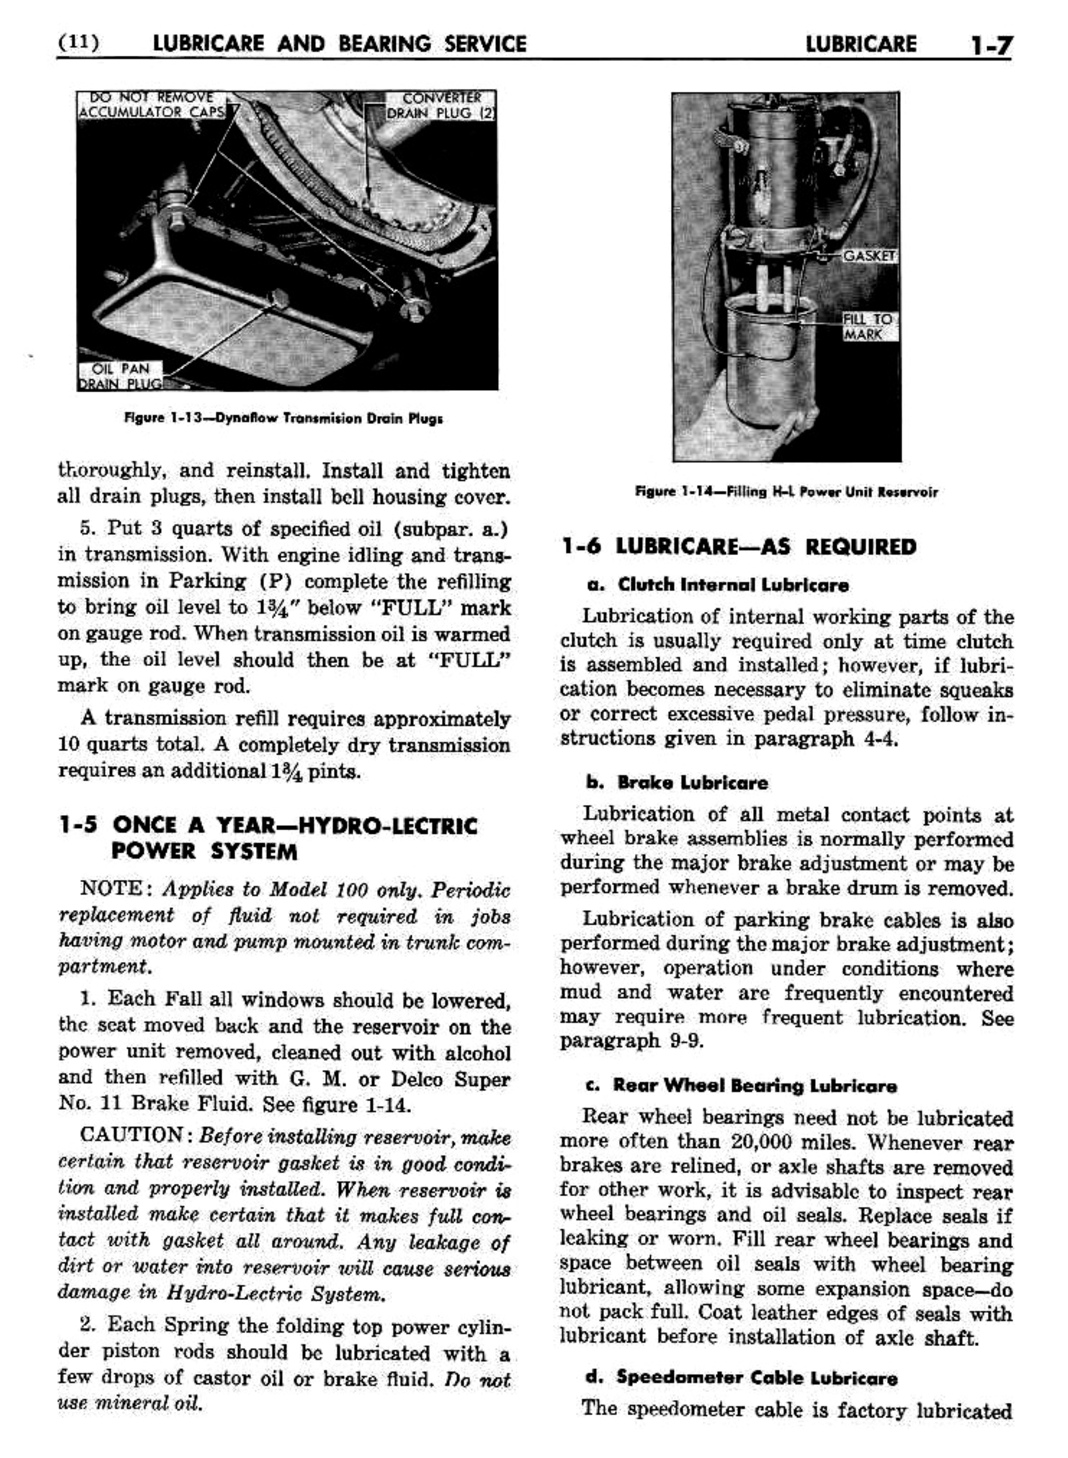 n_02 1954 Buick Shop Manual - Lubricare-007-007.jpg